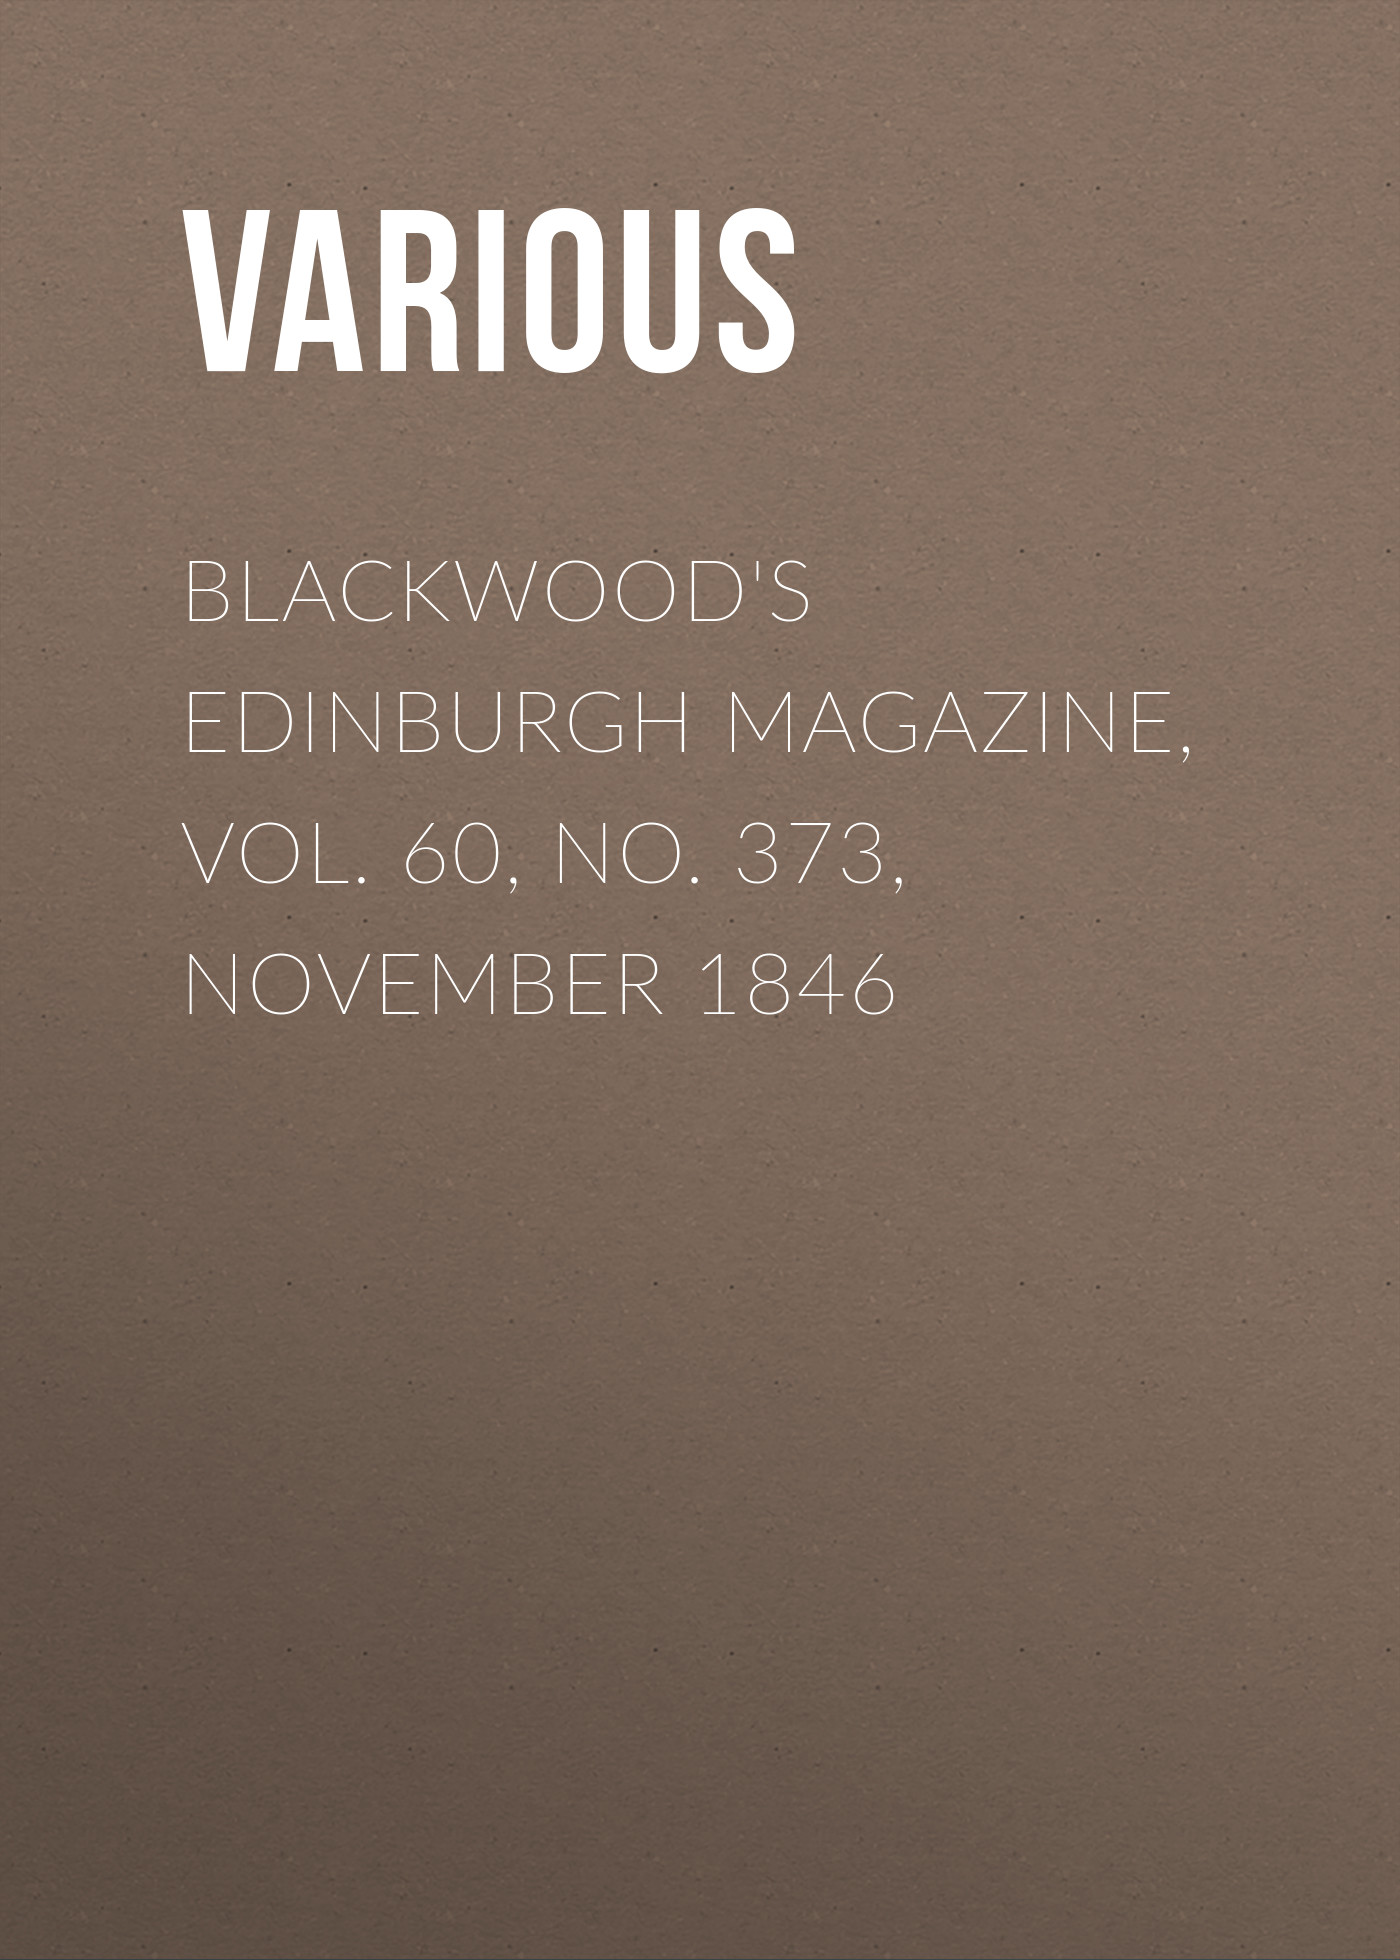 Книга Blackwood's Edinburgh Magazine, Vol. 60, No. 373, November 1846 из серии , созданная  Various, может относится к жанру Журналы, Зарубежная образовательная литература, Книги о Путешествиях. Стоимость электронной книги Blackwood's Edinburgh Magazine, Vol. 60, No. 373, November 1846 с идентификатором 25569351 составляет 0 руб.